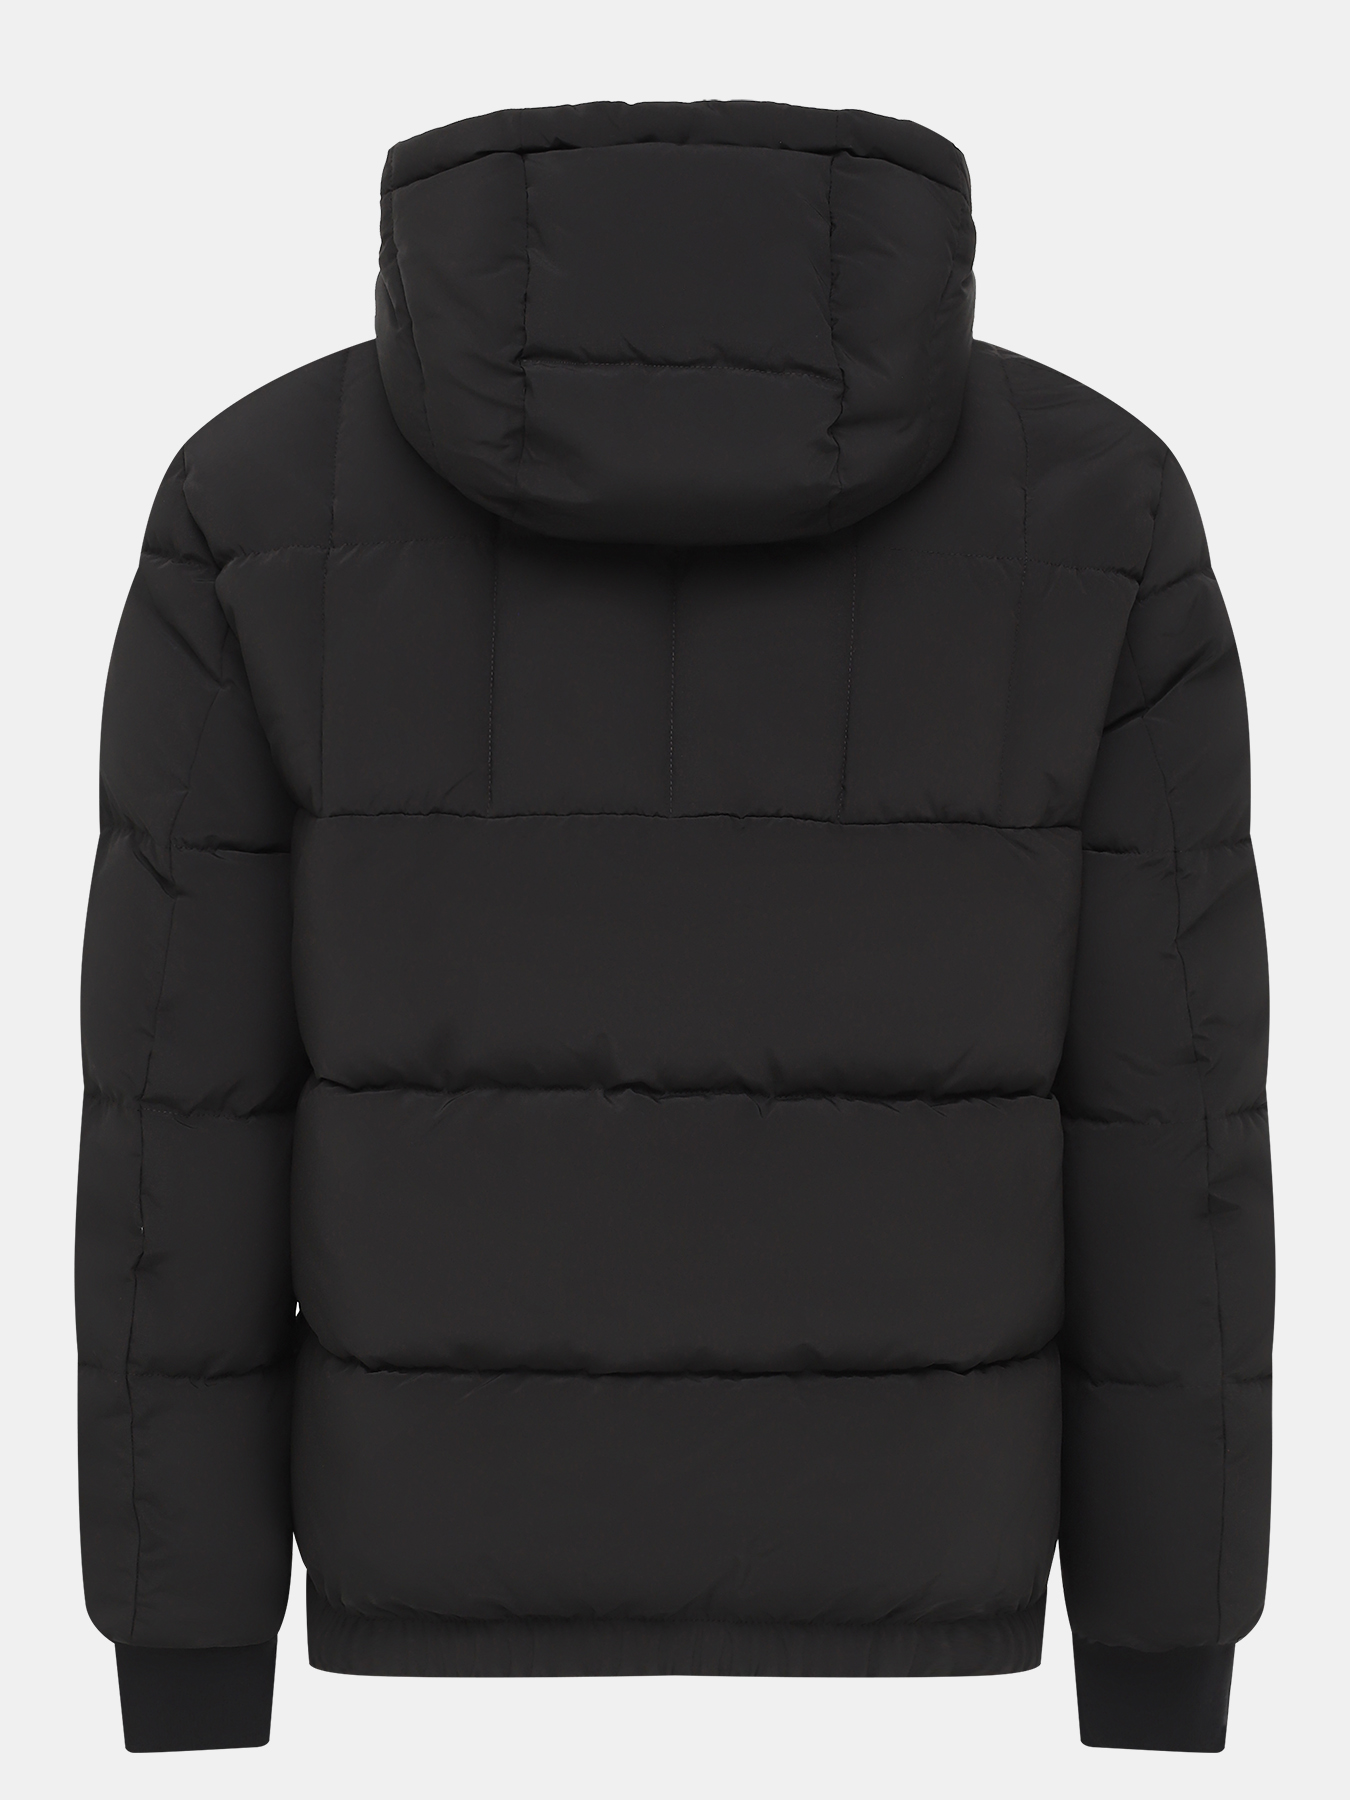 Куртка Balin HUGO 434495-044, цвет черный, размер 50-52 - фото 3